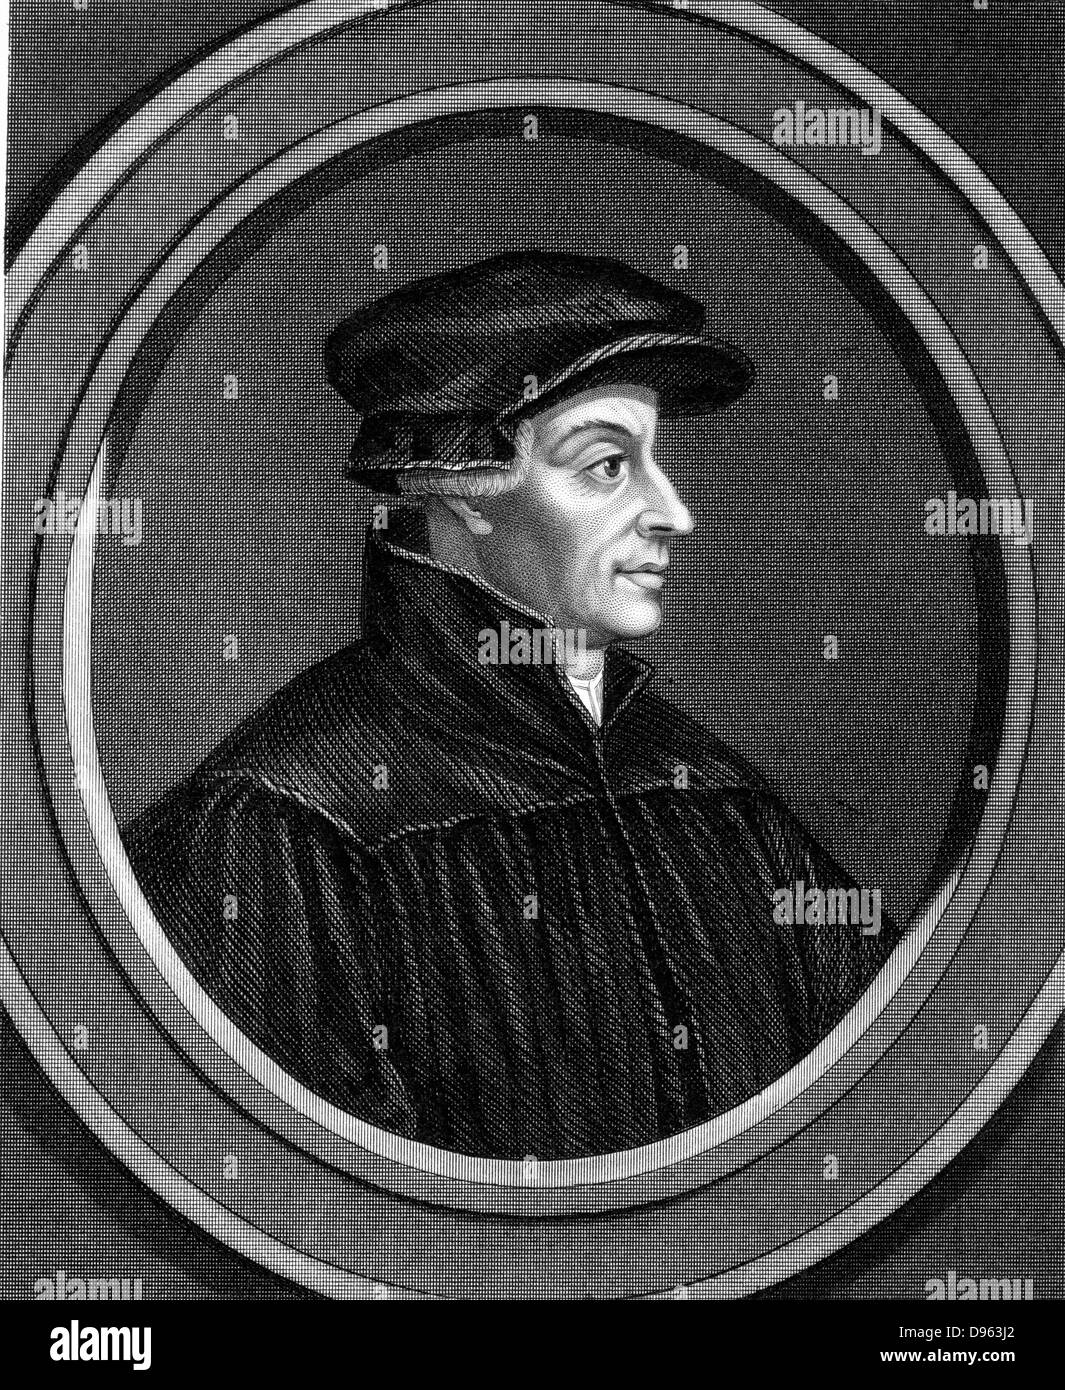 Ulrich Zwingli (1481-1531) riforma svizzero divino. Cappellano di forze della Svizzera durante la Seconda guerra di Kappel quando è stato ucciso in battaglia. Incisione in acciaio, 1851 Foto Stock